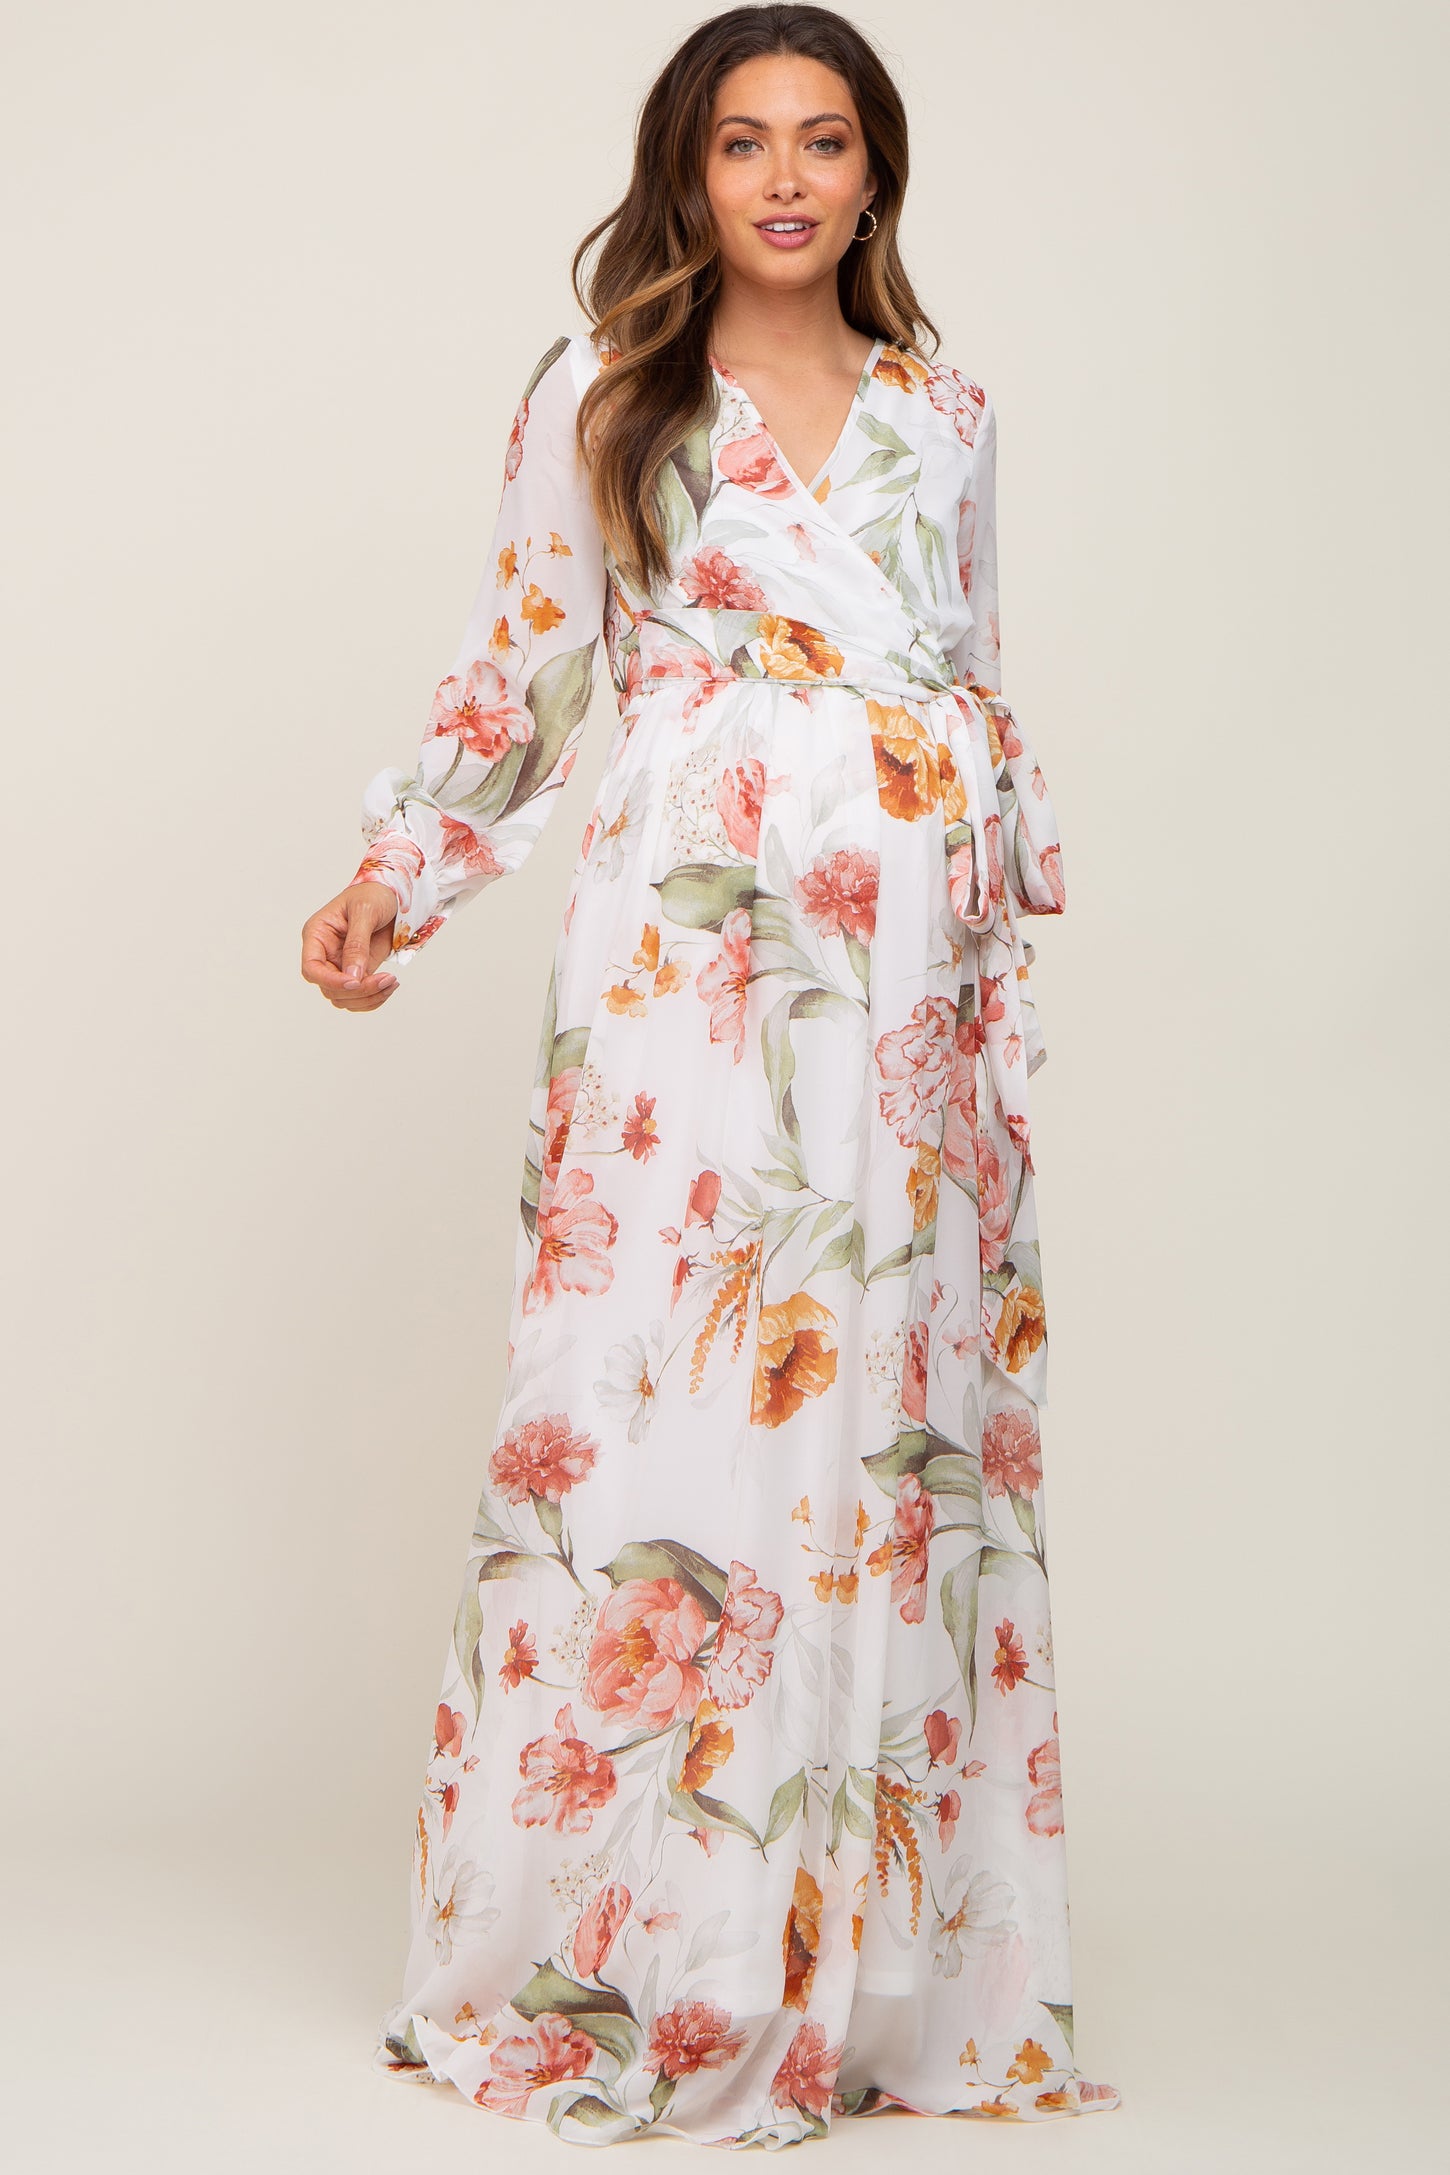 Ivory Floral Chiffon Long Sleeve Maternity Maxi Dress– PinkBlush